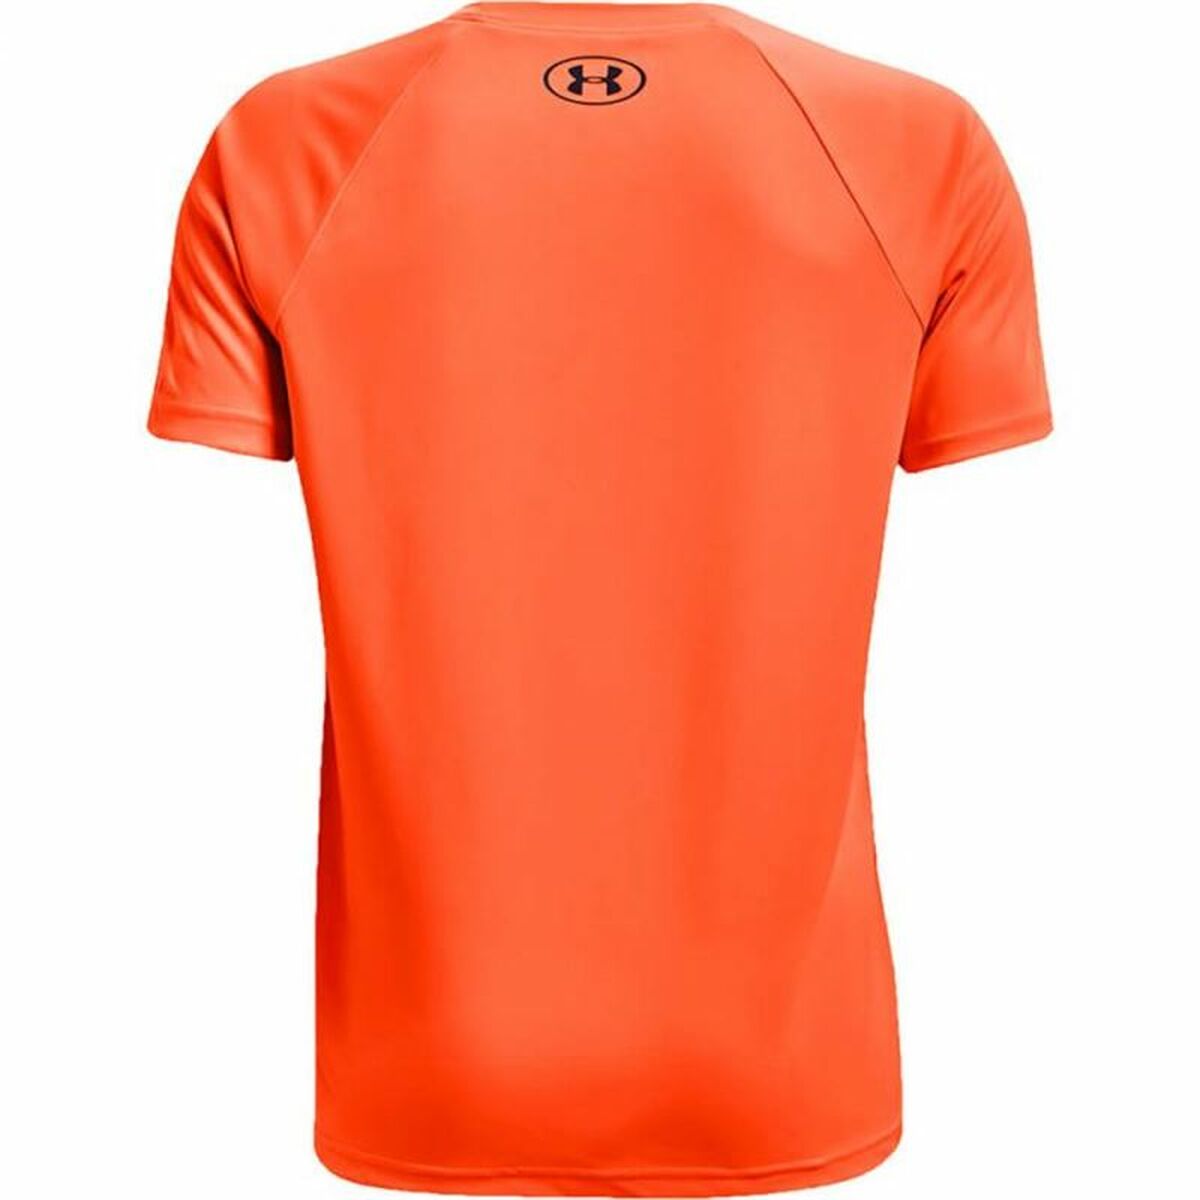 Children’s Short Sleeve T-Shirt Under Armour Orange